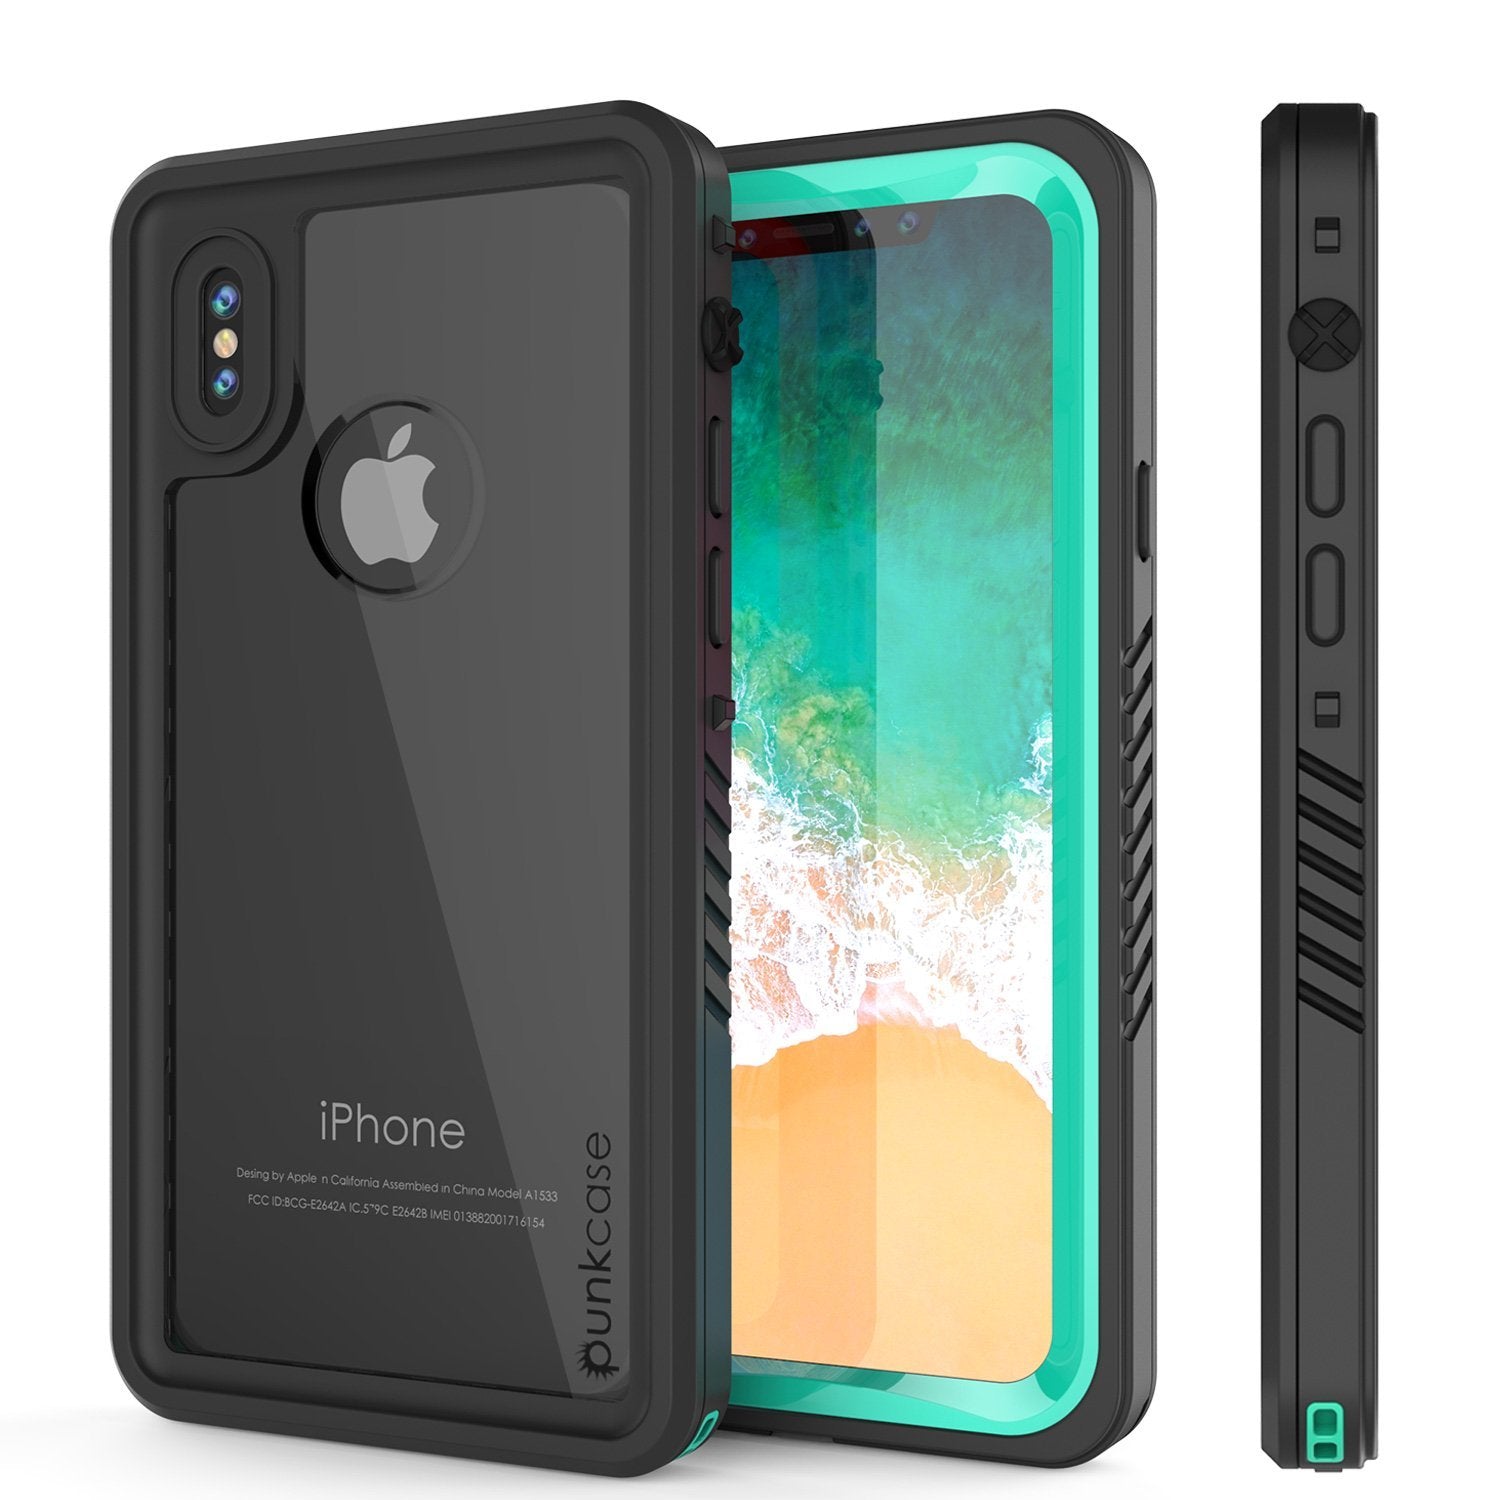 Atlantische Oceaan aanvaarden Toezicht houden iPhone XS Max Waterproof Case, Punkcase [Extreme Series] Armor Cover W –  punkcase